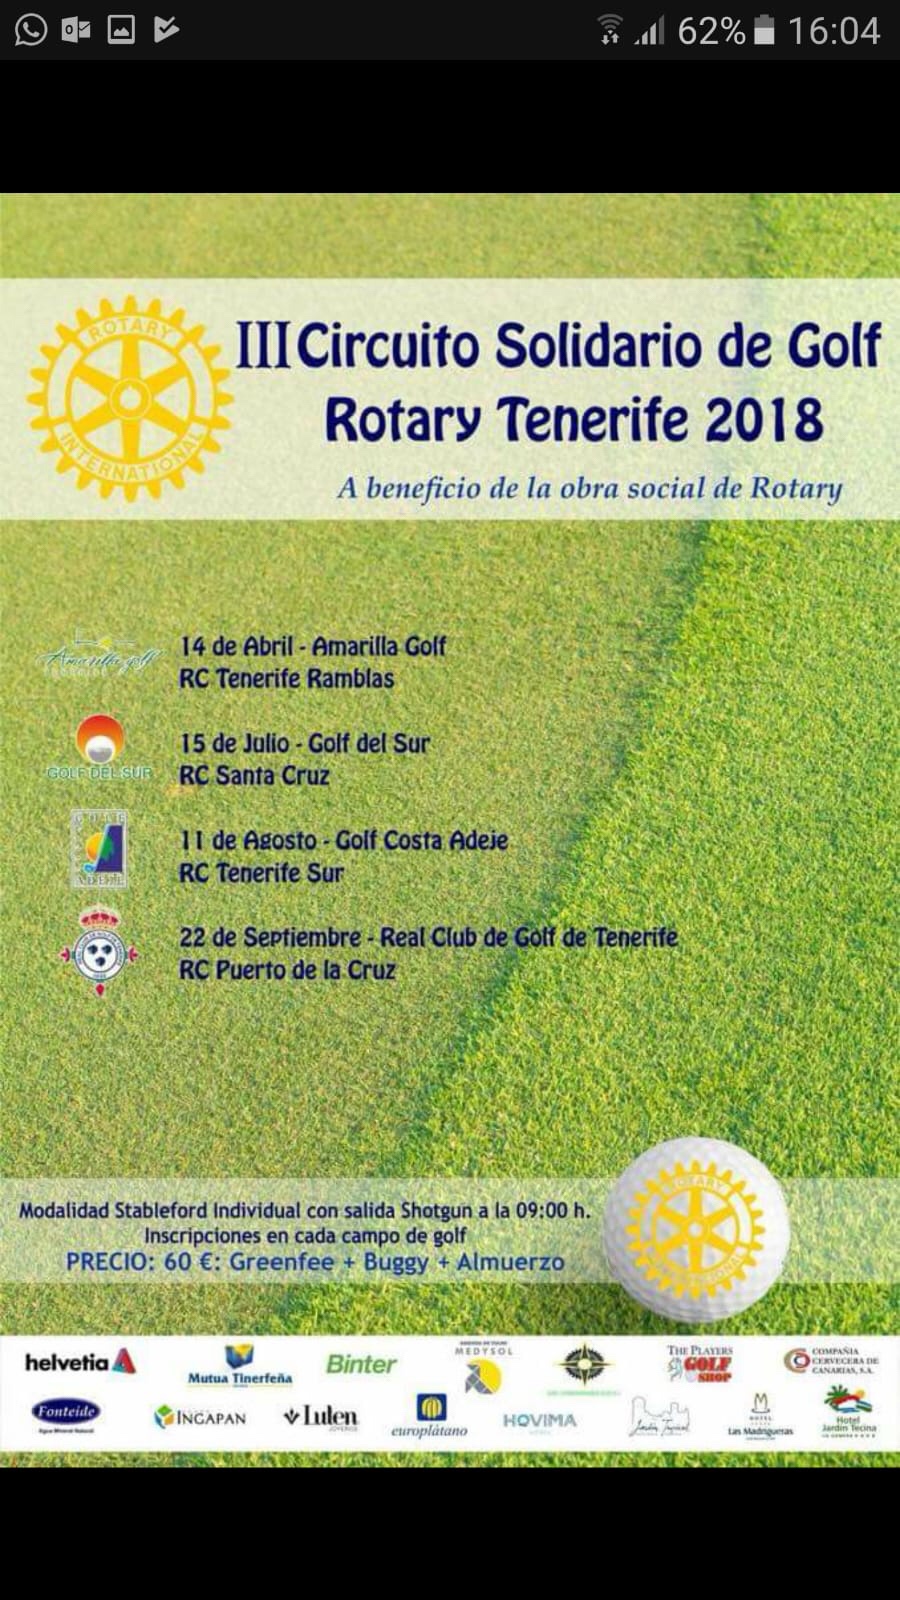 Este sábado 22 de octubre ha tenido lugar el ultimo torneo del III Circuito Solidario de Golf Rotary Tenerife 2018